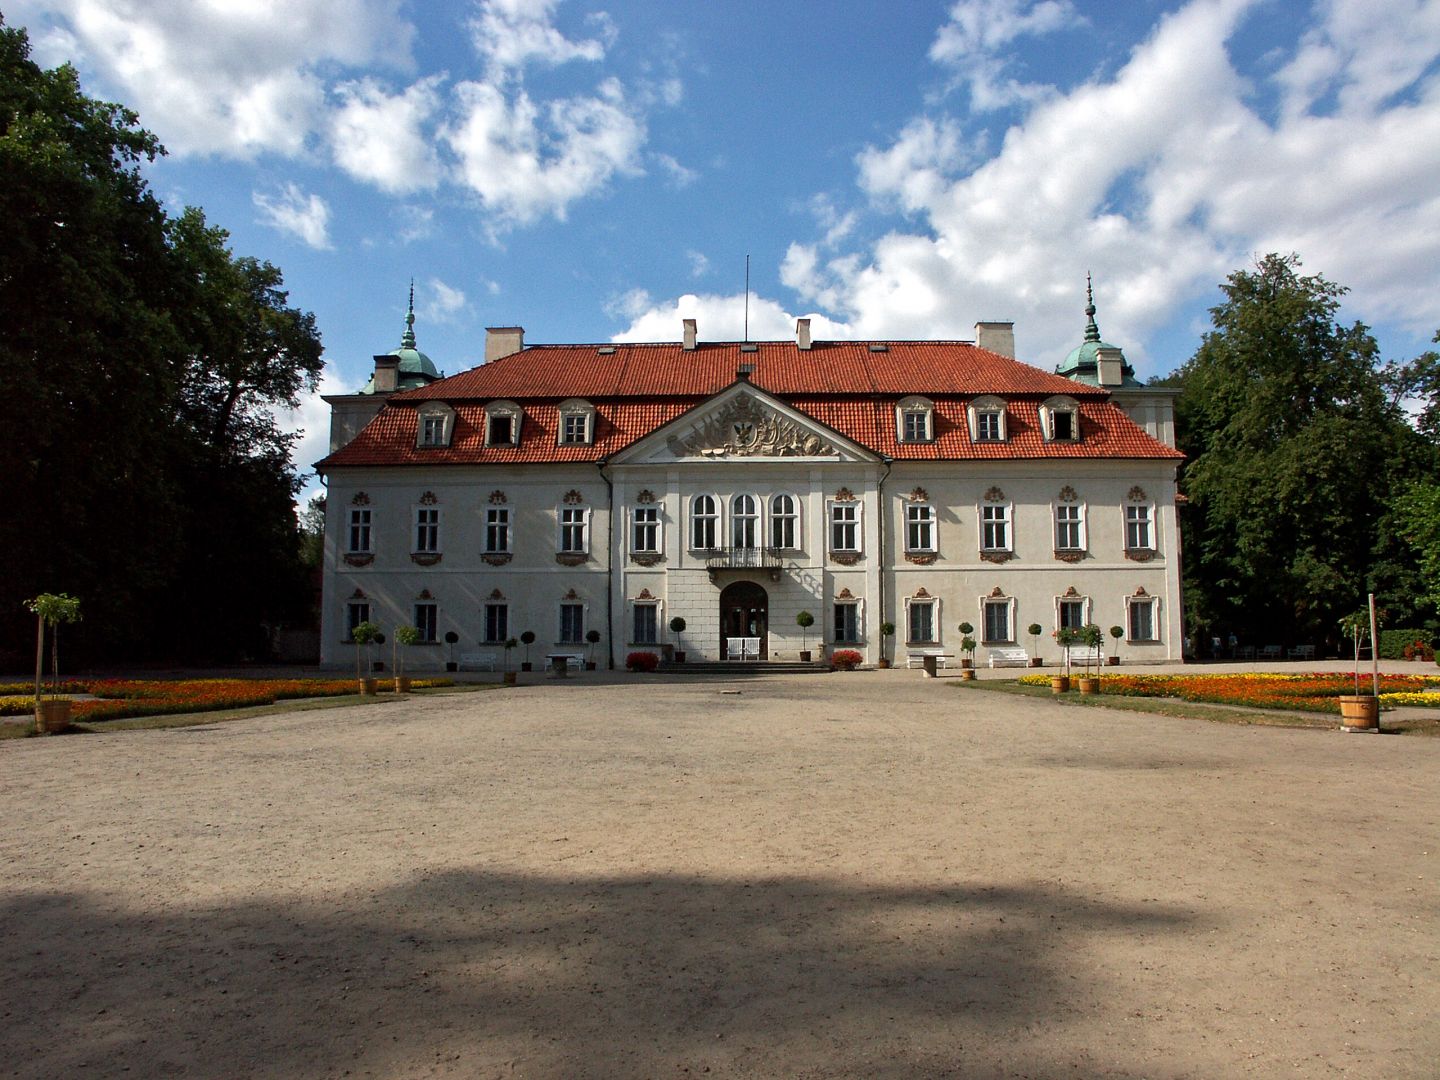 Palace in Nieborów